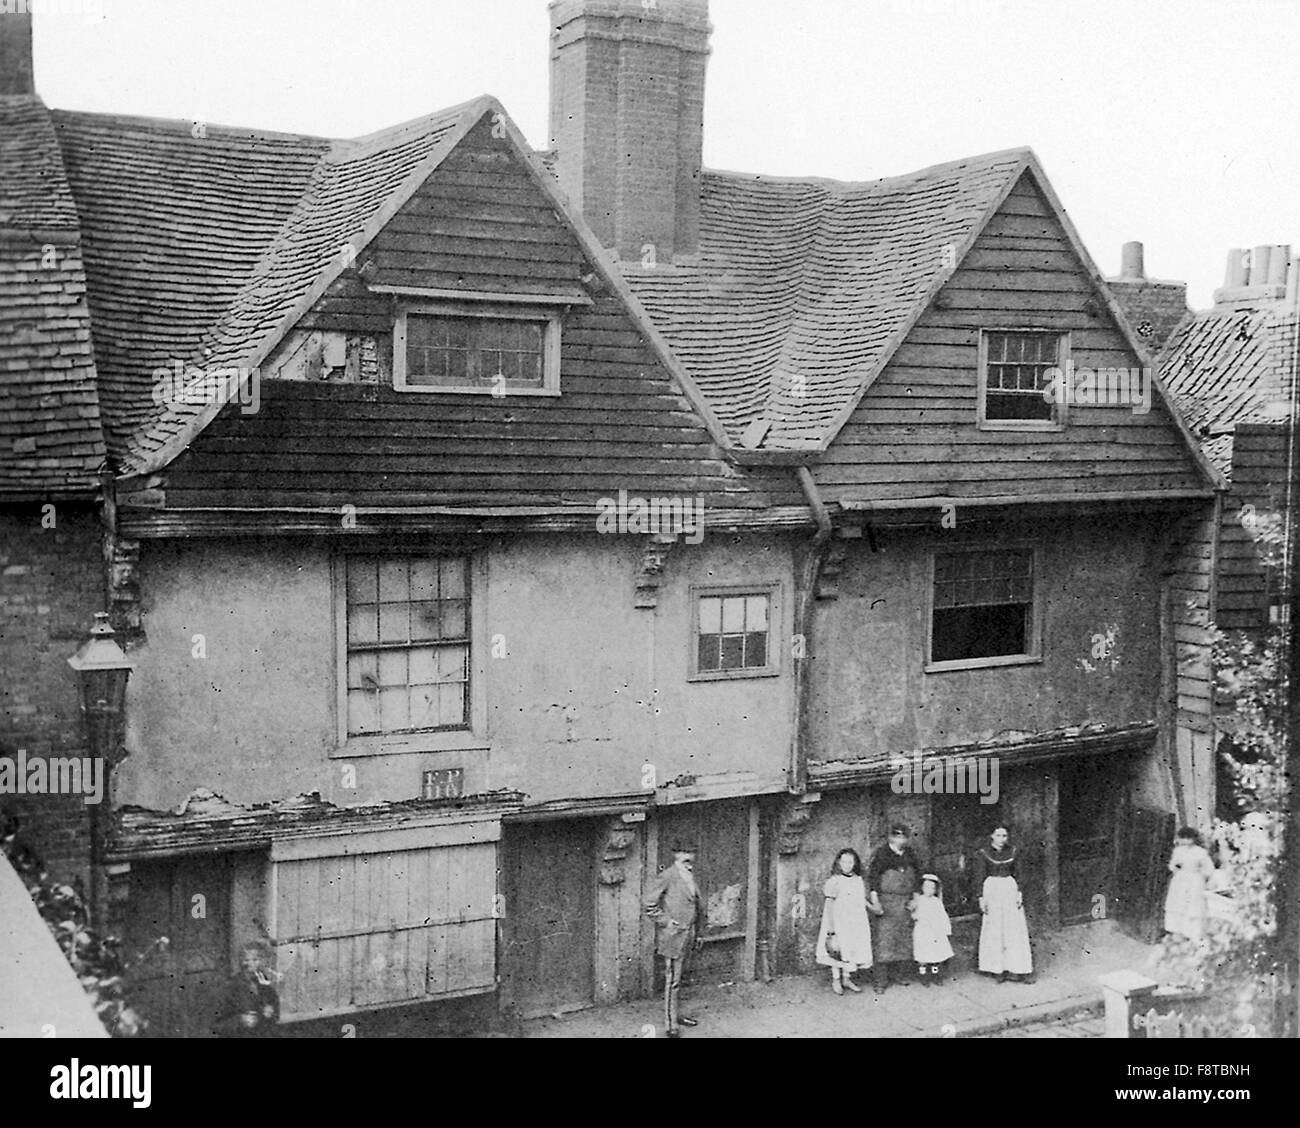 Sir Walter Raleigh Haus am Blackwall, London. Das Haus wurde während des Baus des Blackwall-Tunnels abgerissen. Stockfoto